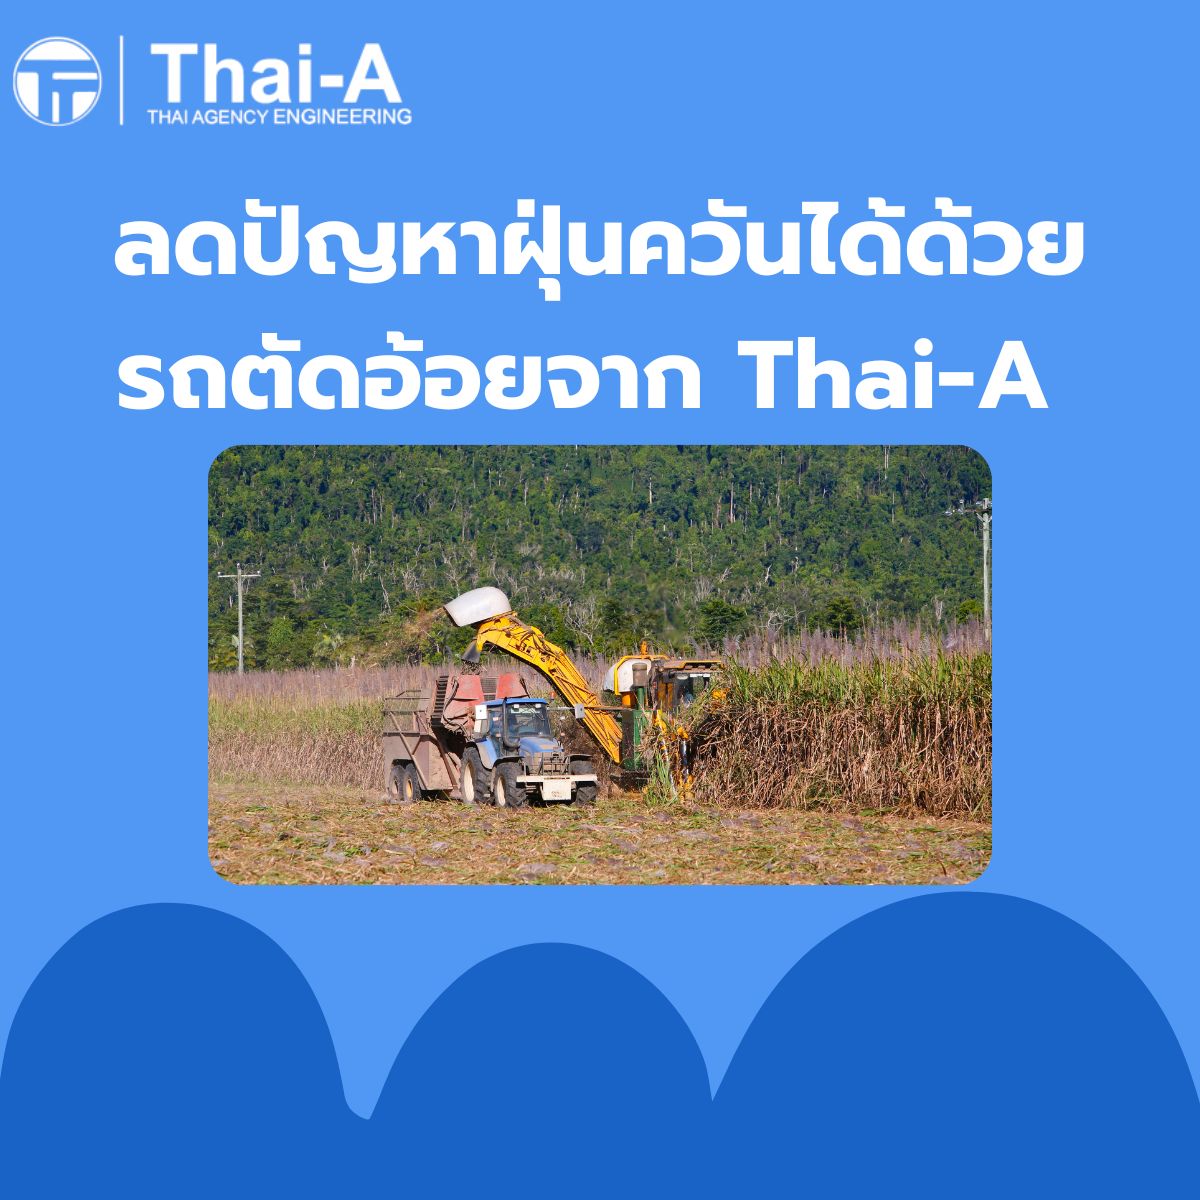 ลดปัญหาฝุ่นควันได้ด้วยรถตัดอ้อยจาก Thai-A